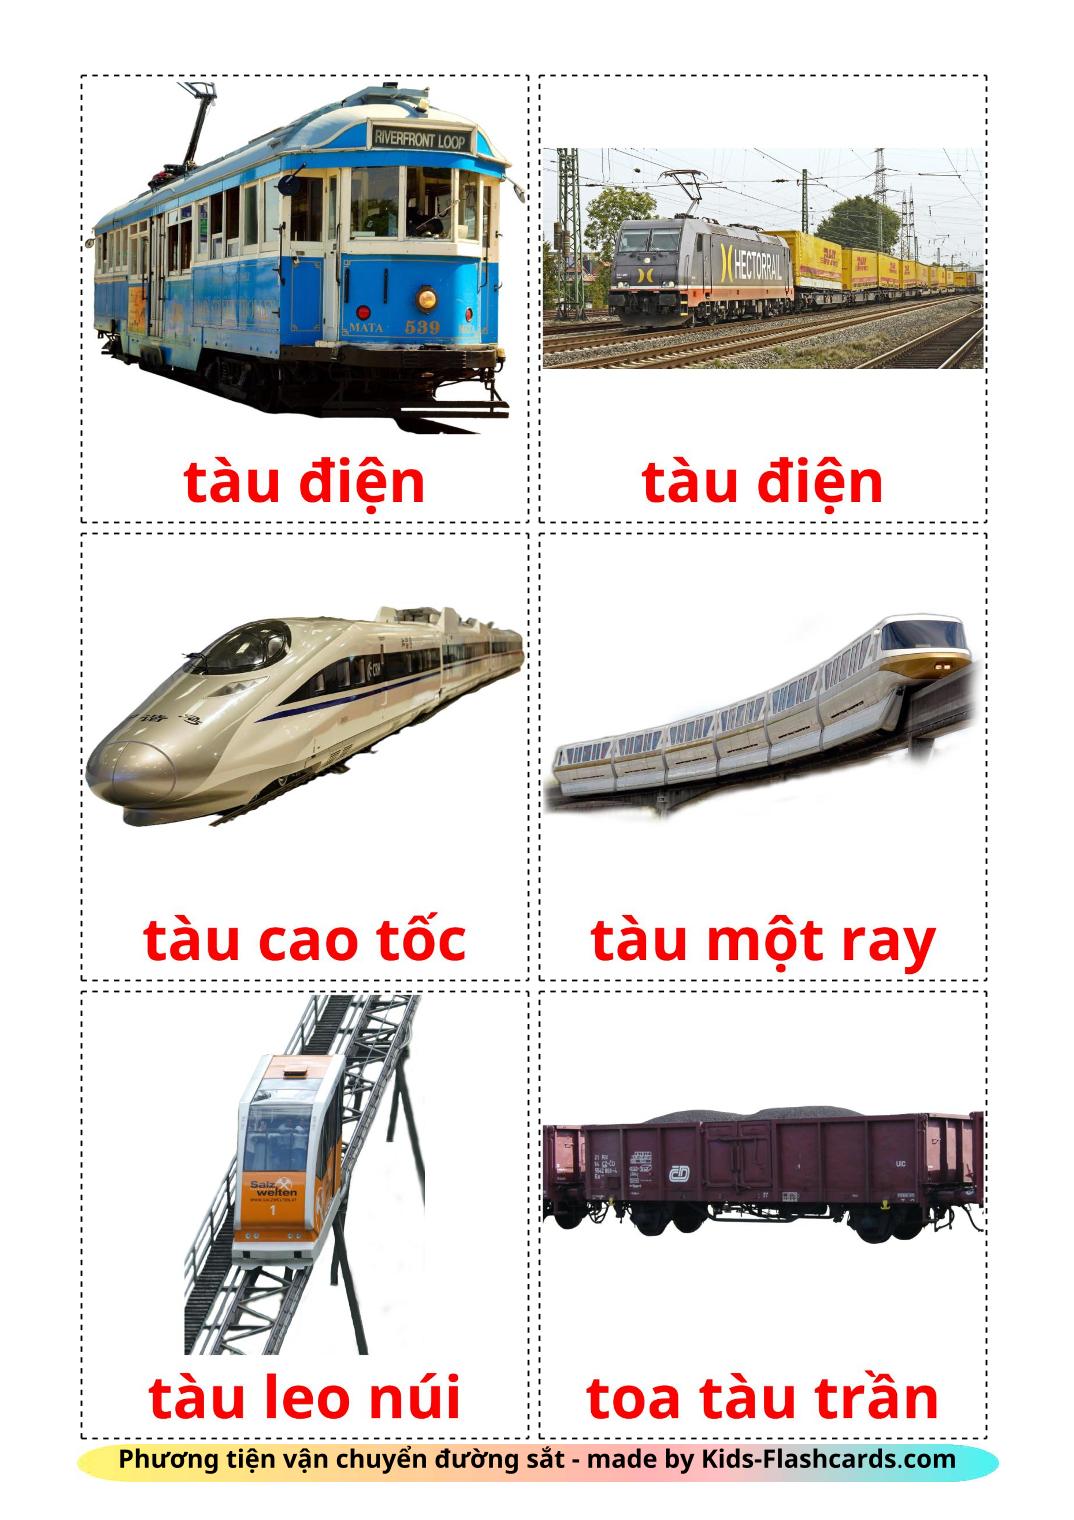 Transporte Ferroviário - 18 Flashcards vietnamitaes gratuitos para impressão